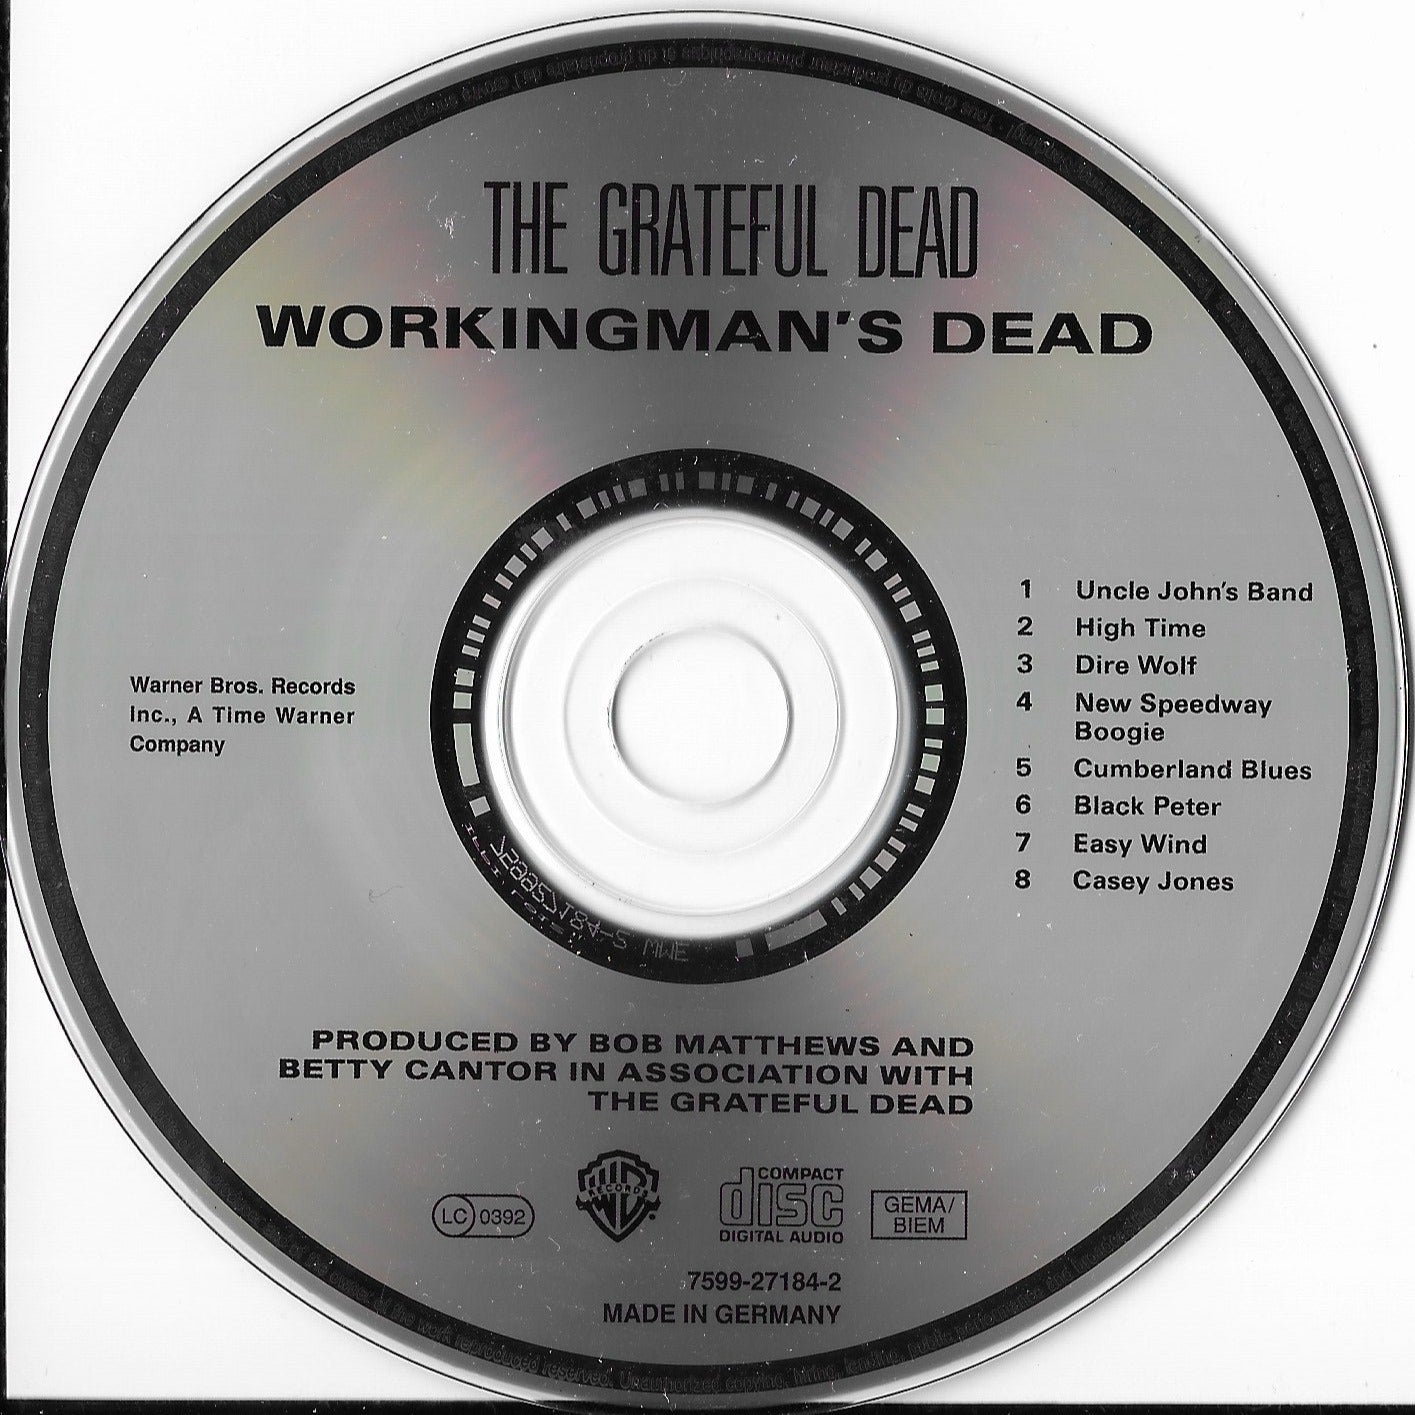 THE GRATEFUL DEAD - Workingman's Dead